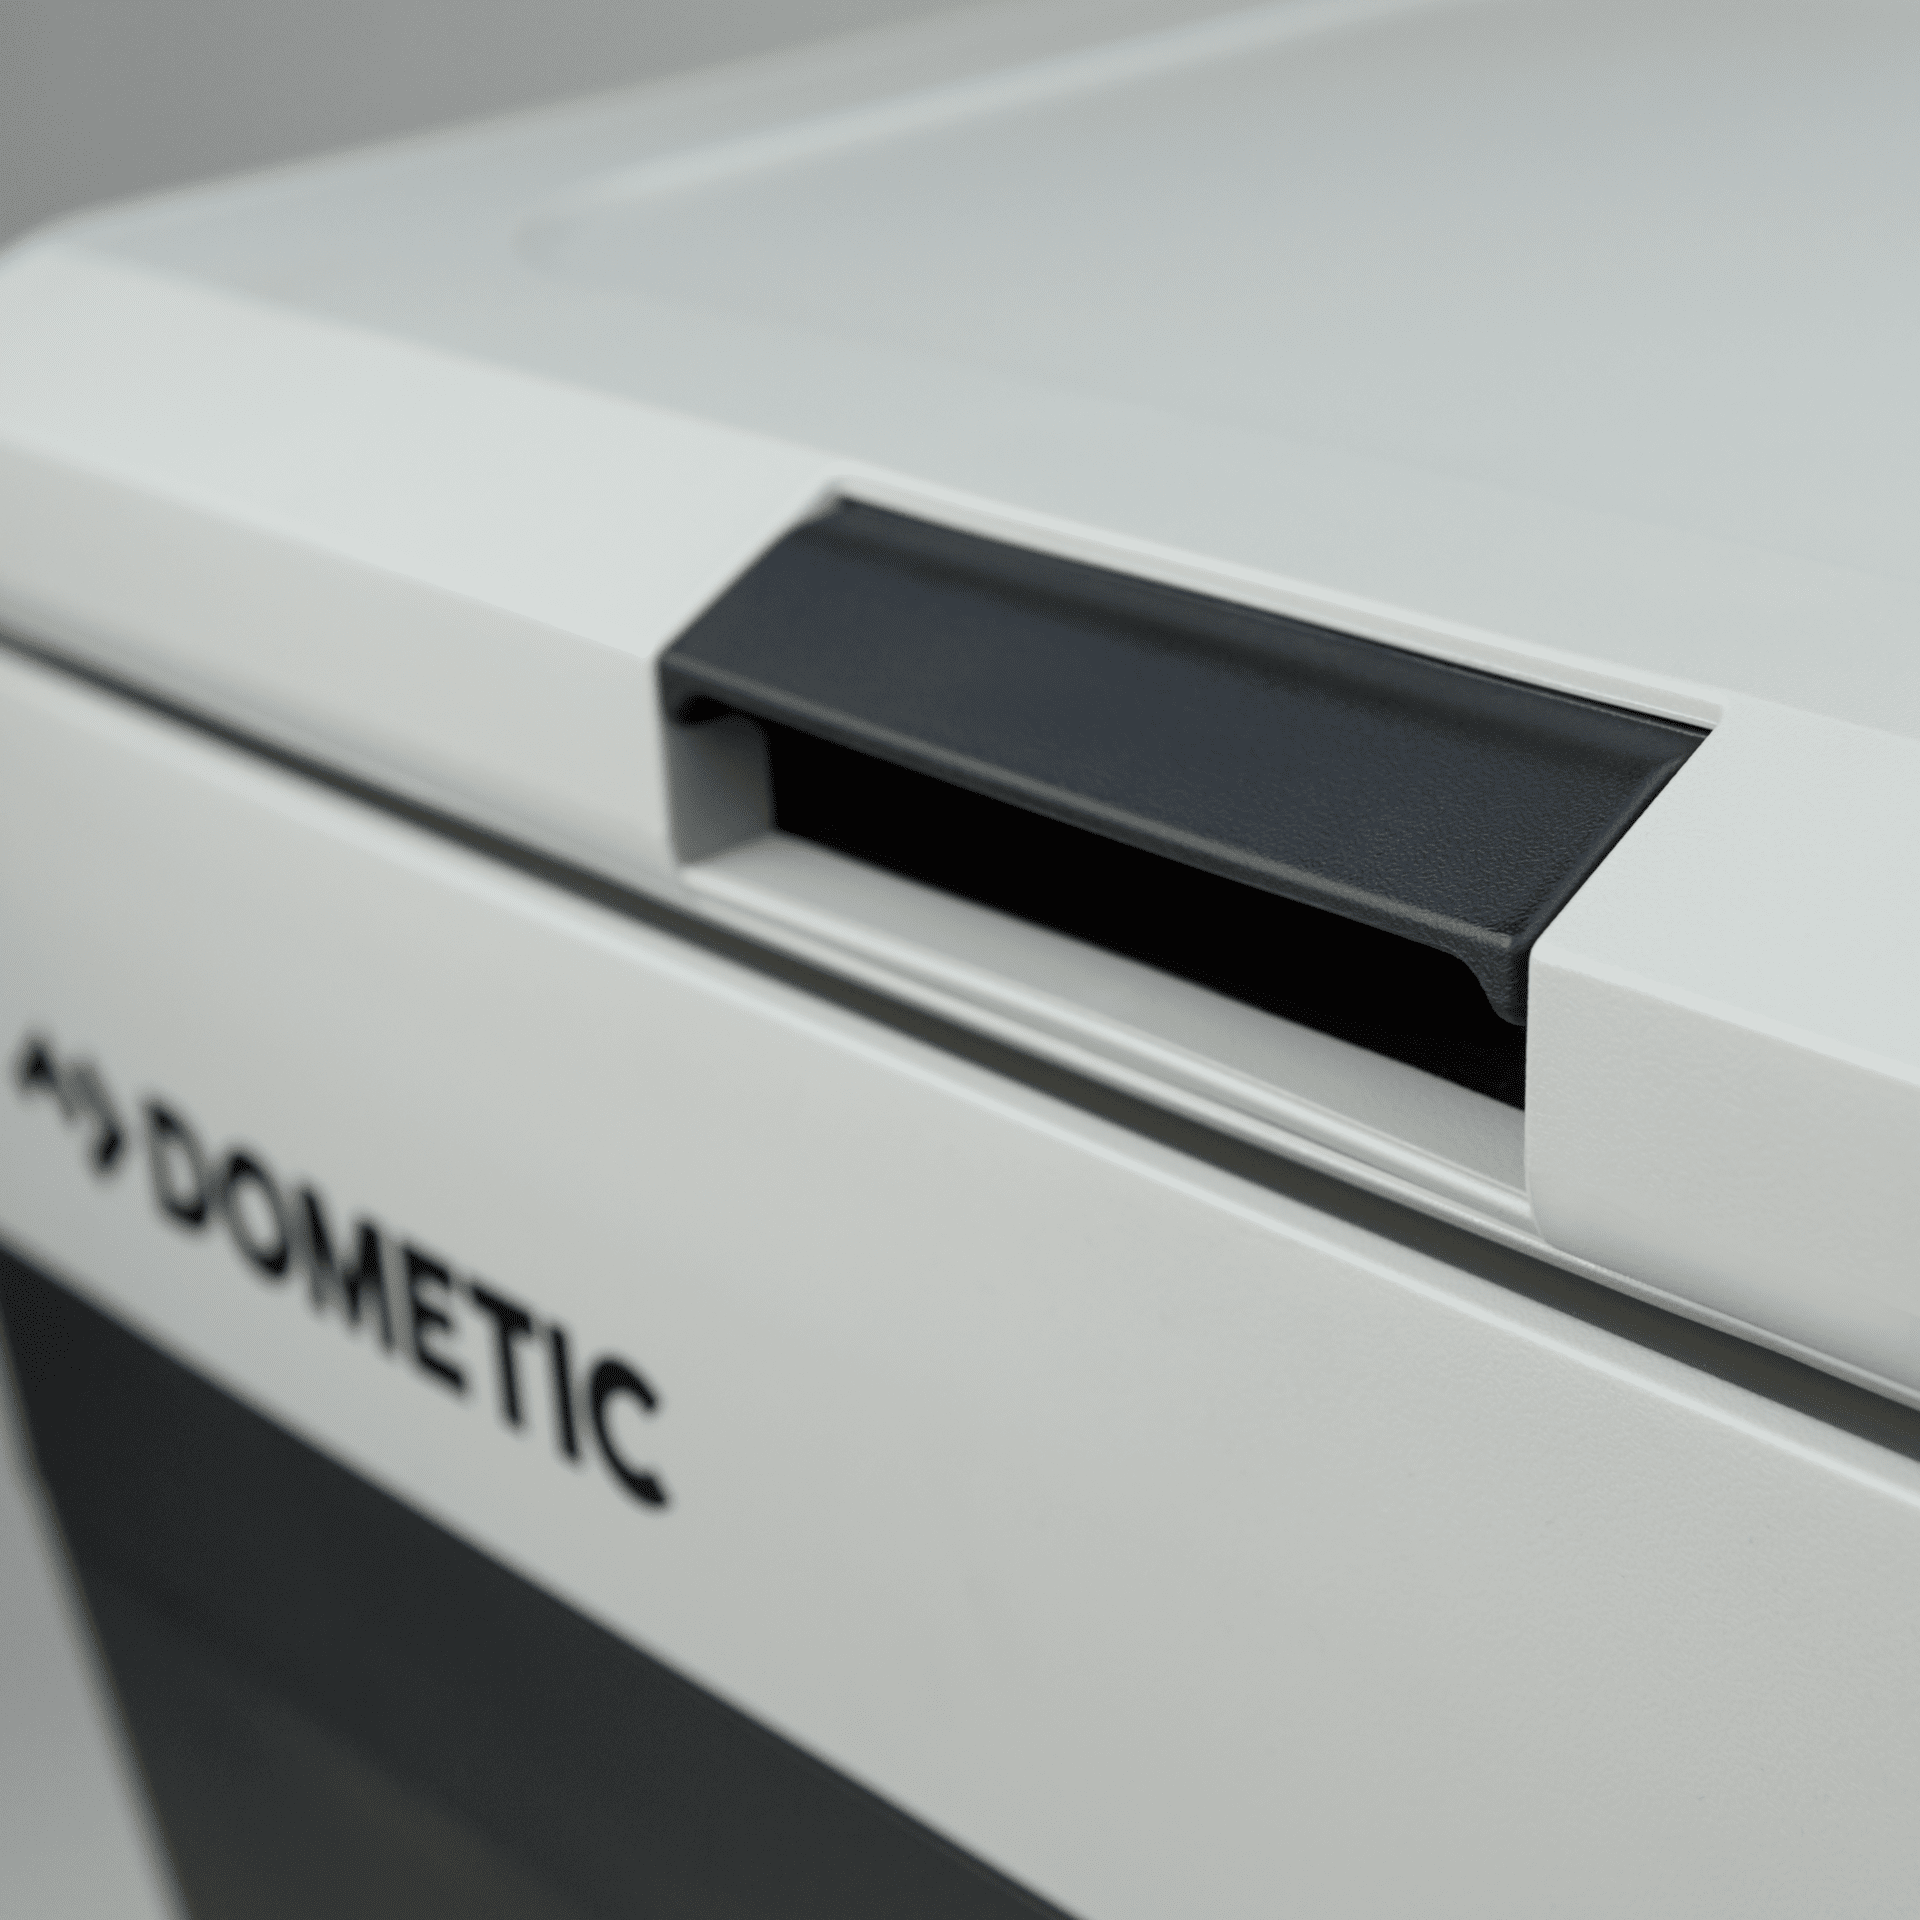 Dometic CFF 35 Kompressor-Kühlbox zum Bestpreis sichern - COMPUTER BILD